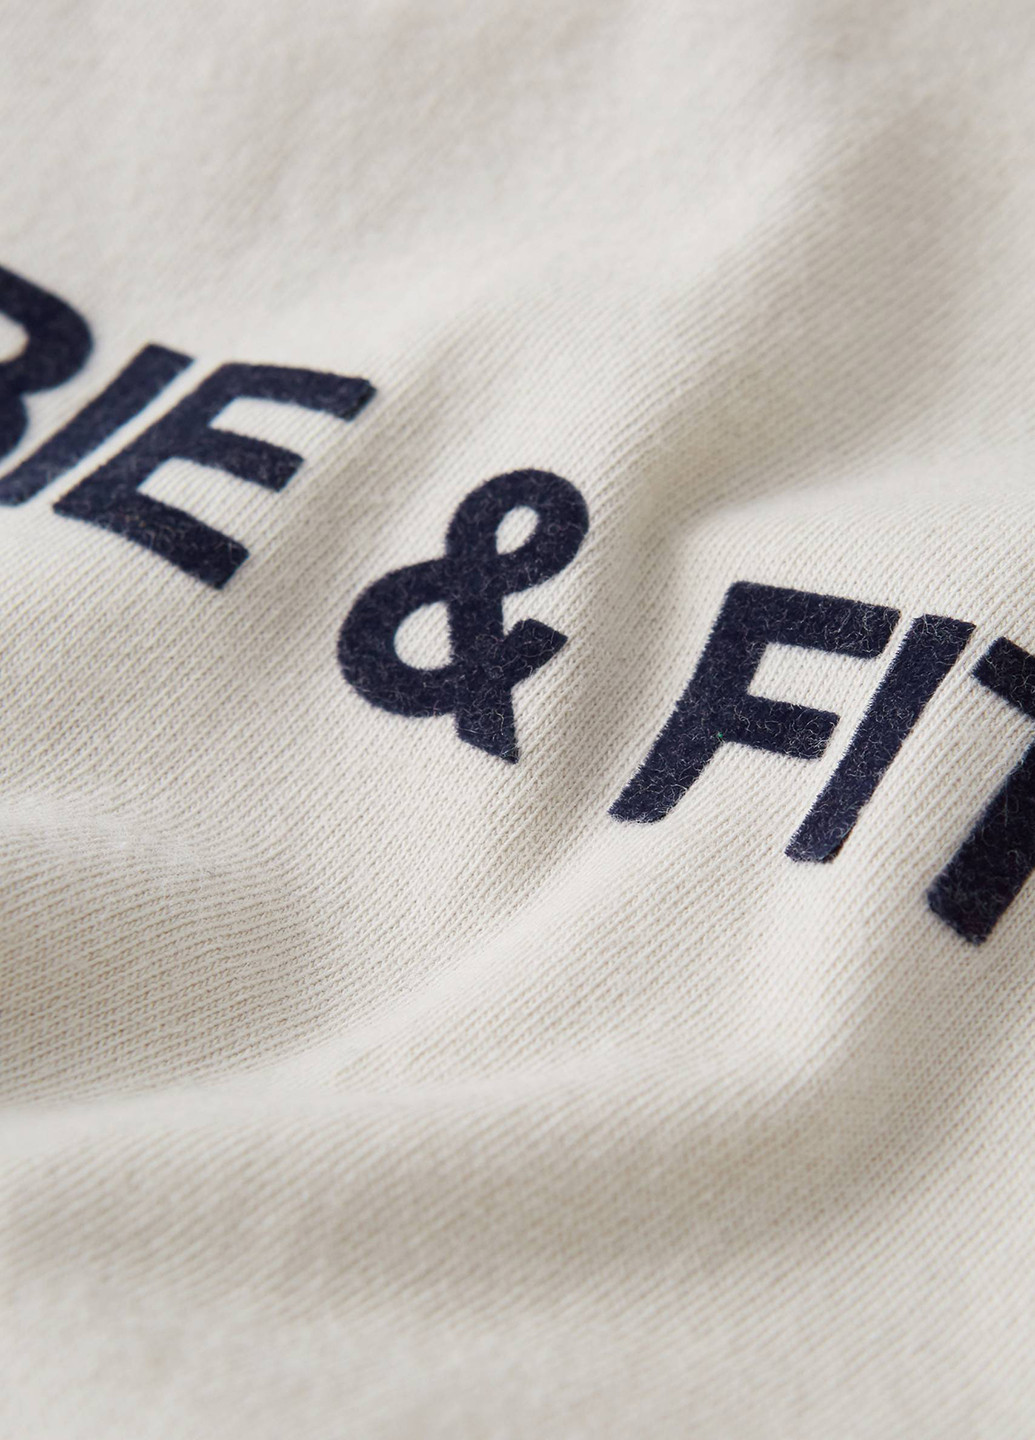 Светло-бежевая футболка Abercrombie & Fitch